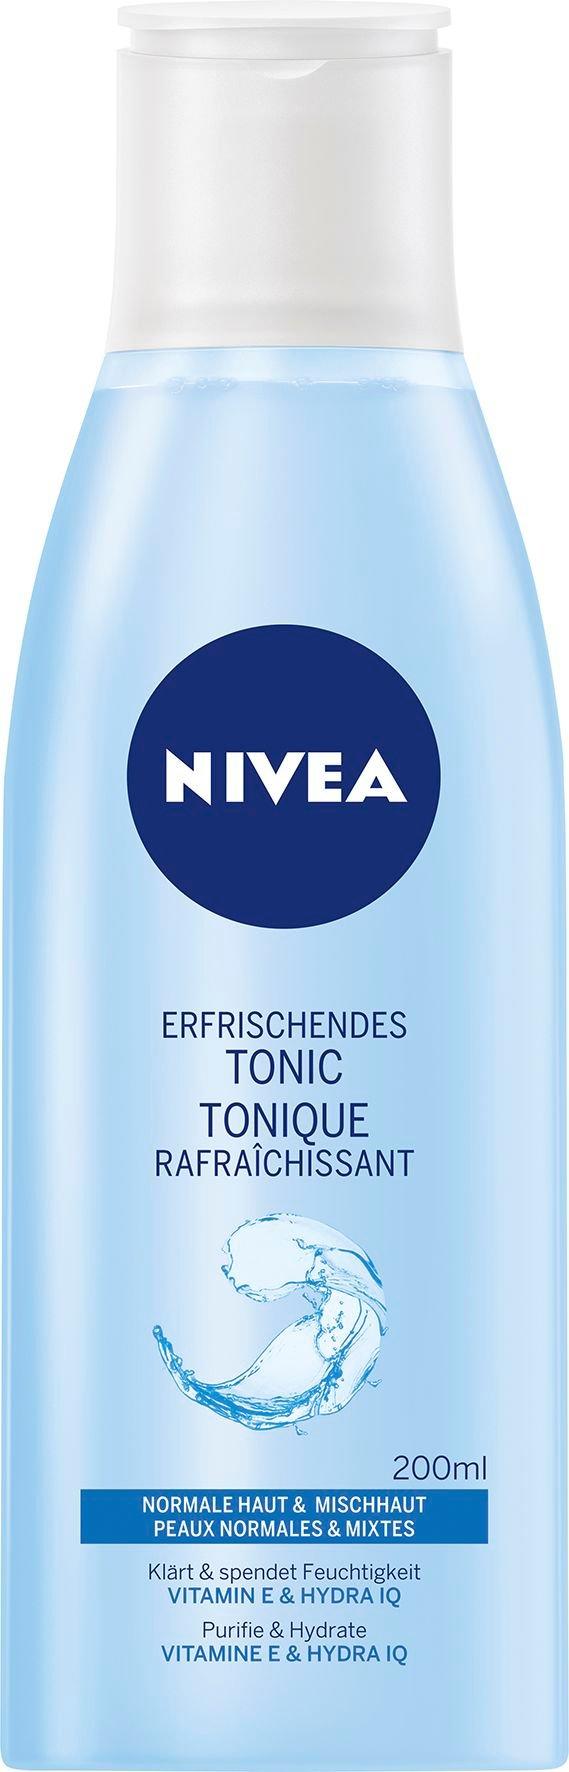 NIVEA Visage Erfrischendes Tonico rinfrescante 